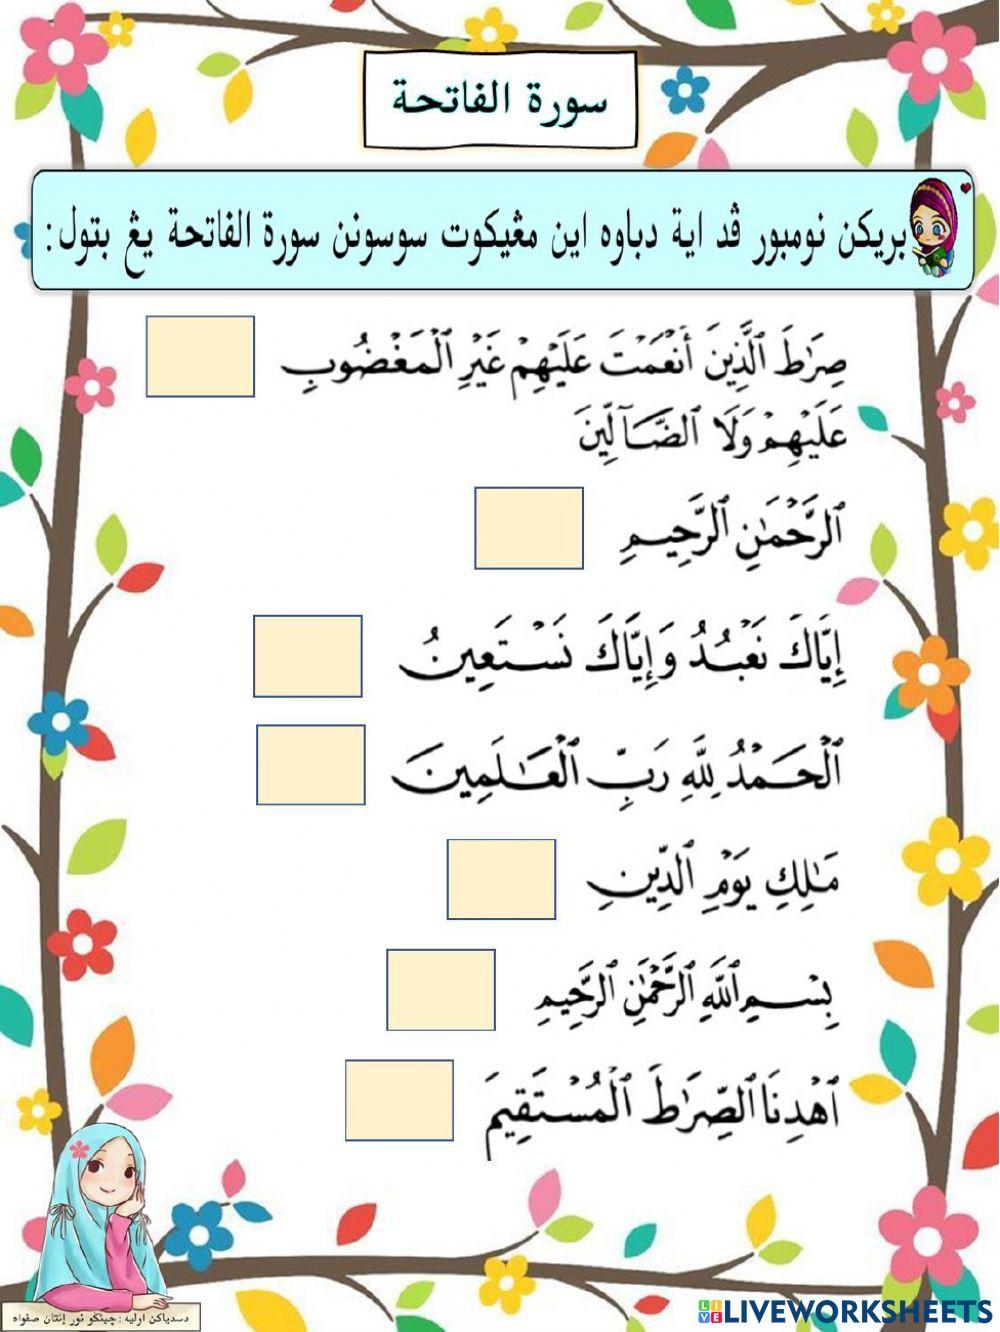 Latihan Surah Al-Fatihah